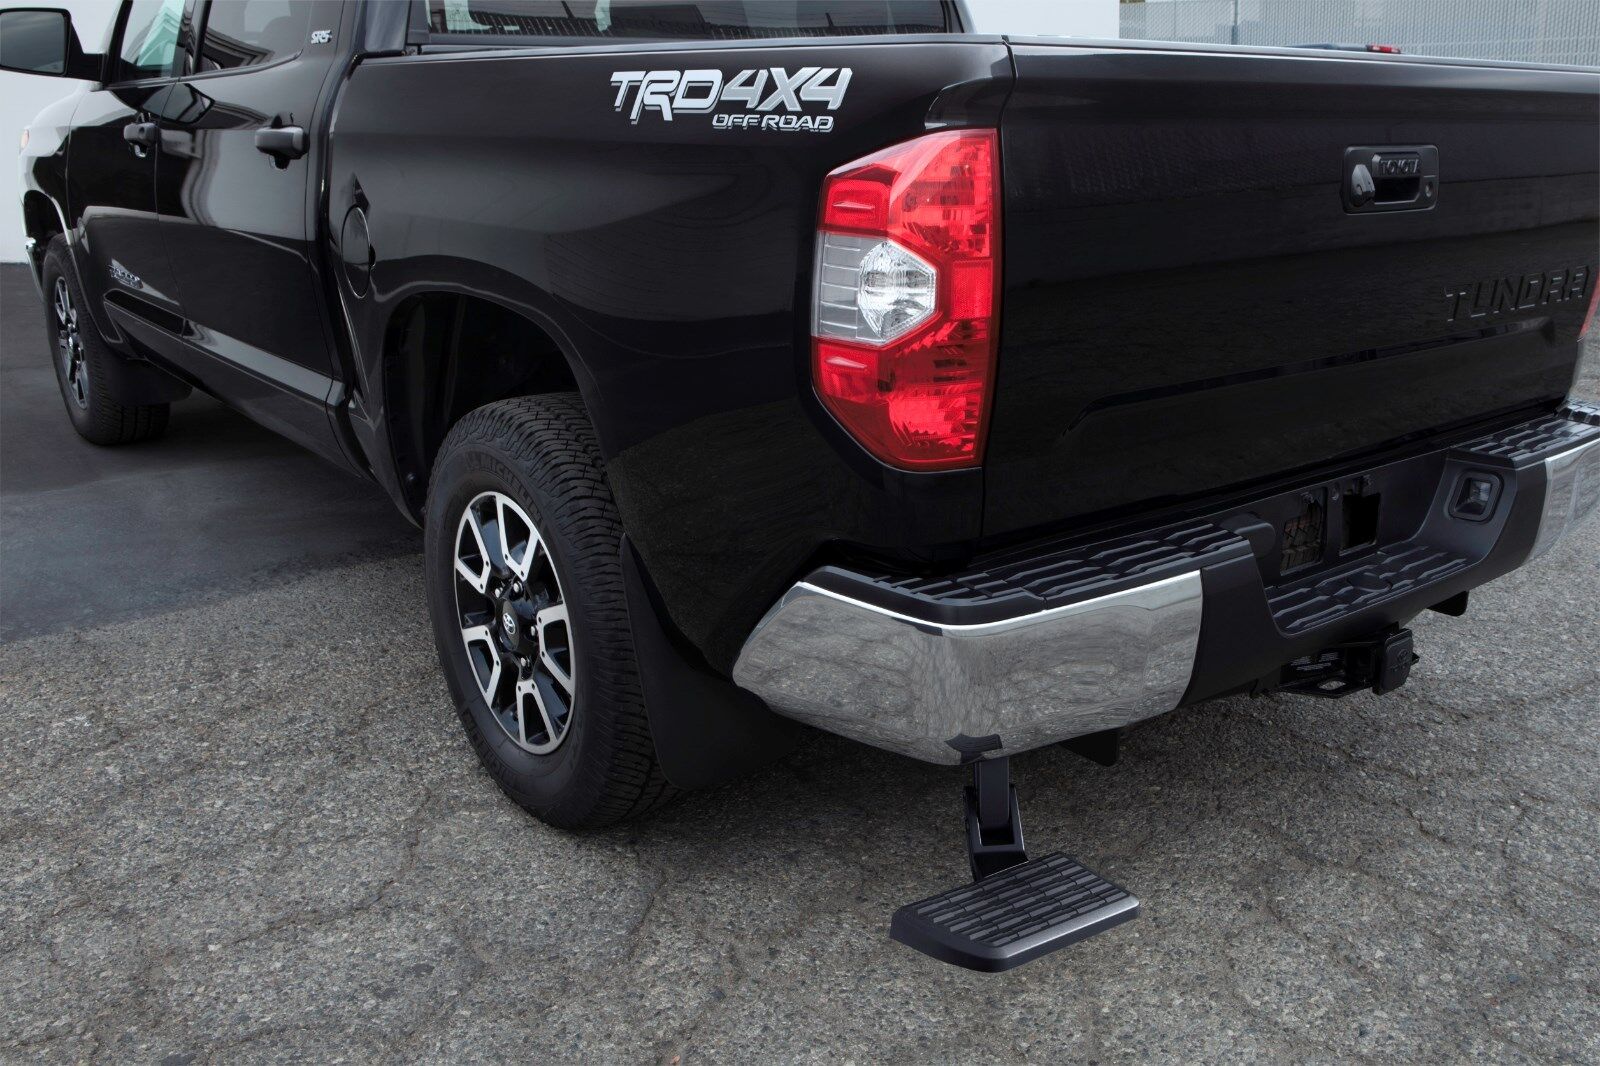 Toyota Tundra 2014 - 2021 Bumper Bed Step Kit - OEM NEW